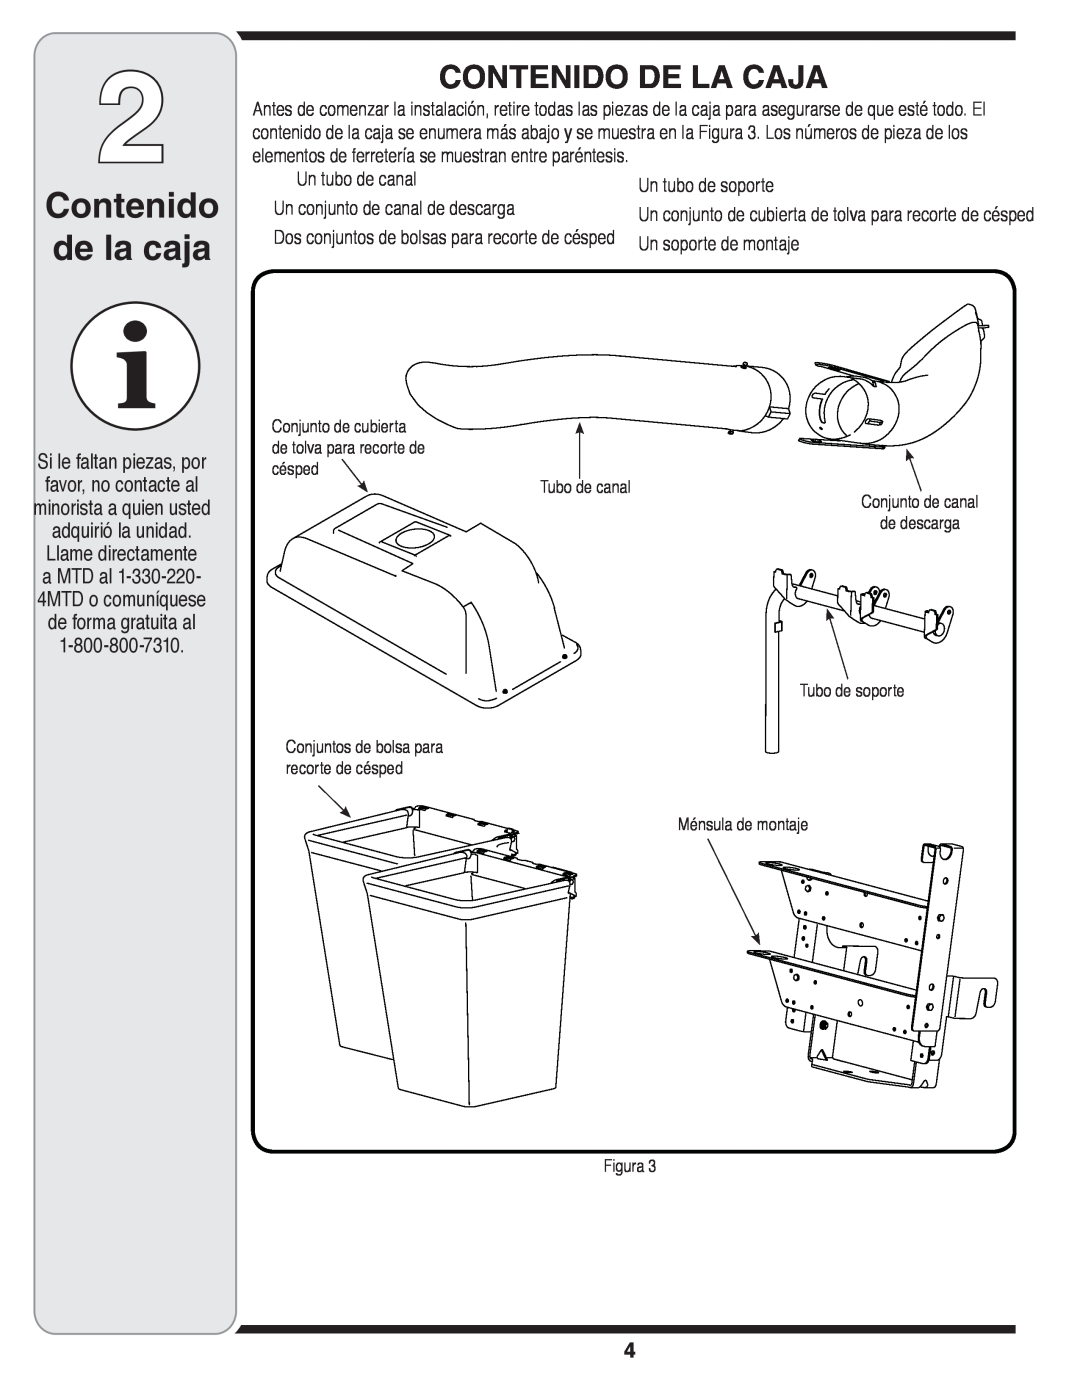 MTD OHD 190-180 warranty Contenido de la caja, Contenido De La Caja, Un tubo de canal Un conjunto de canal de descarga 